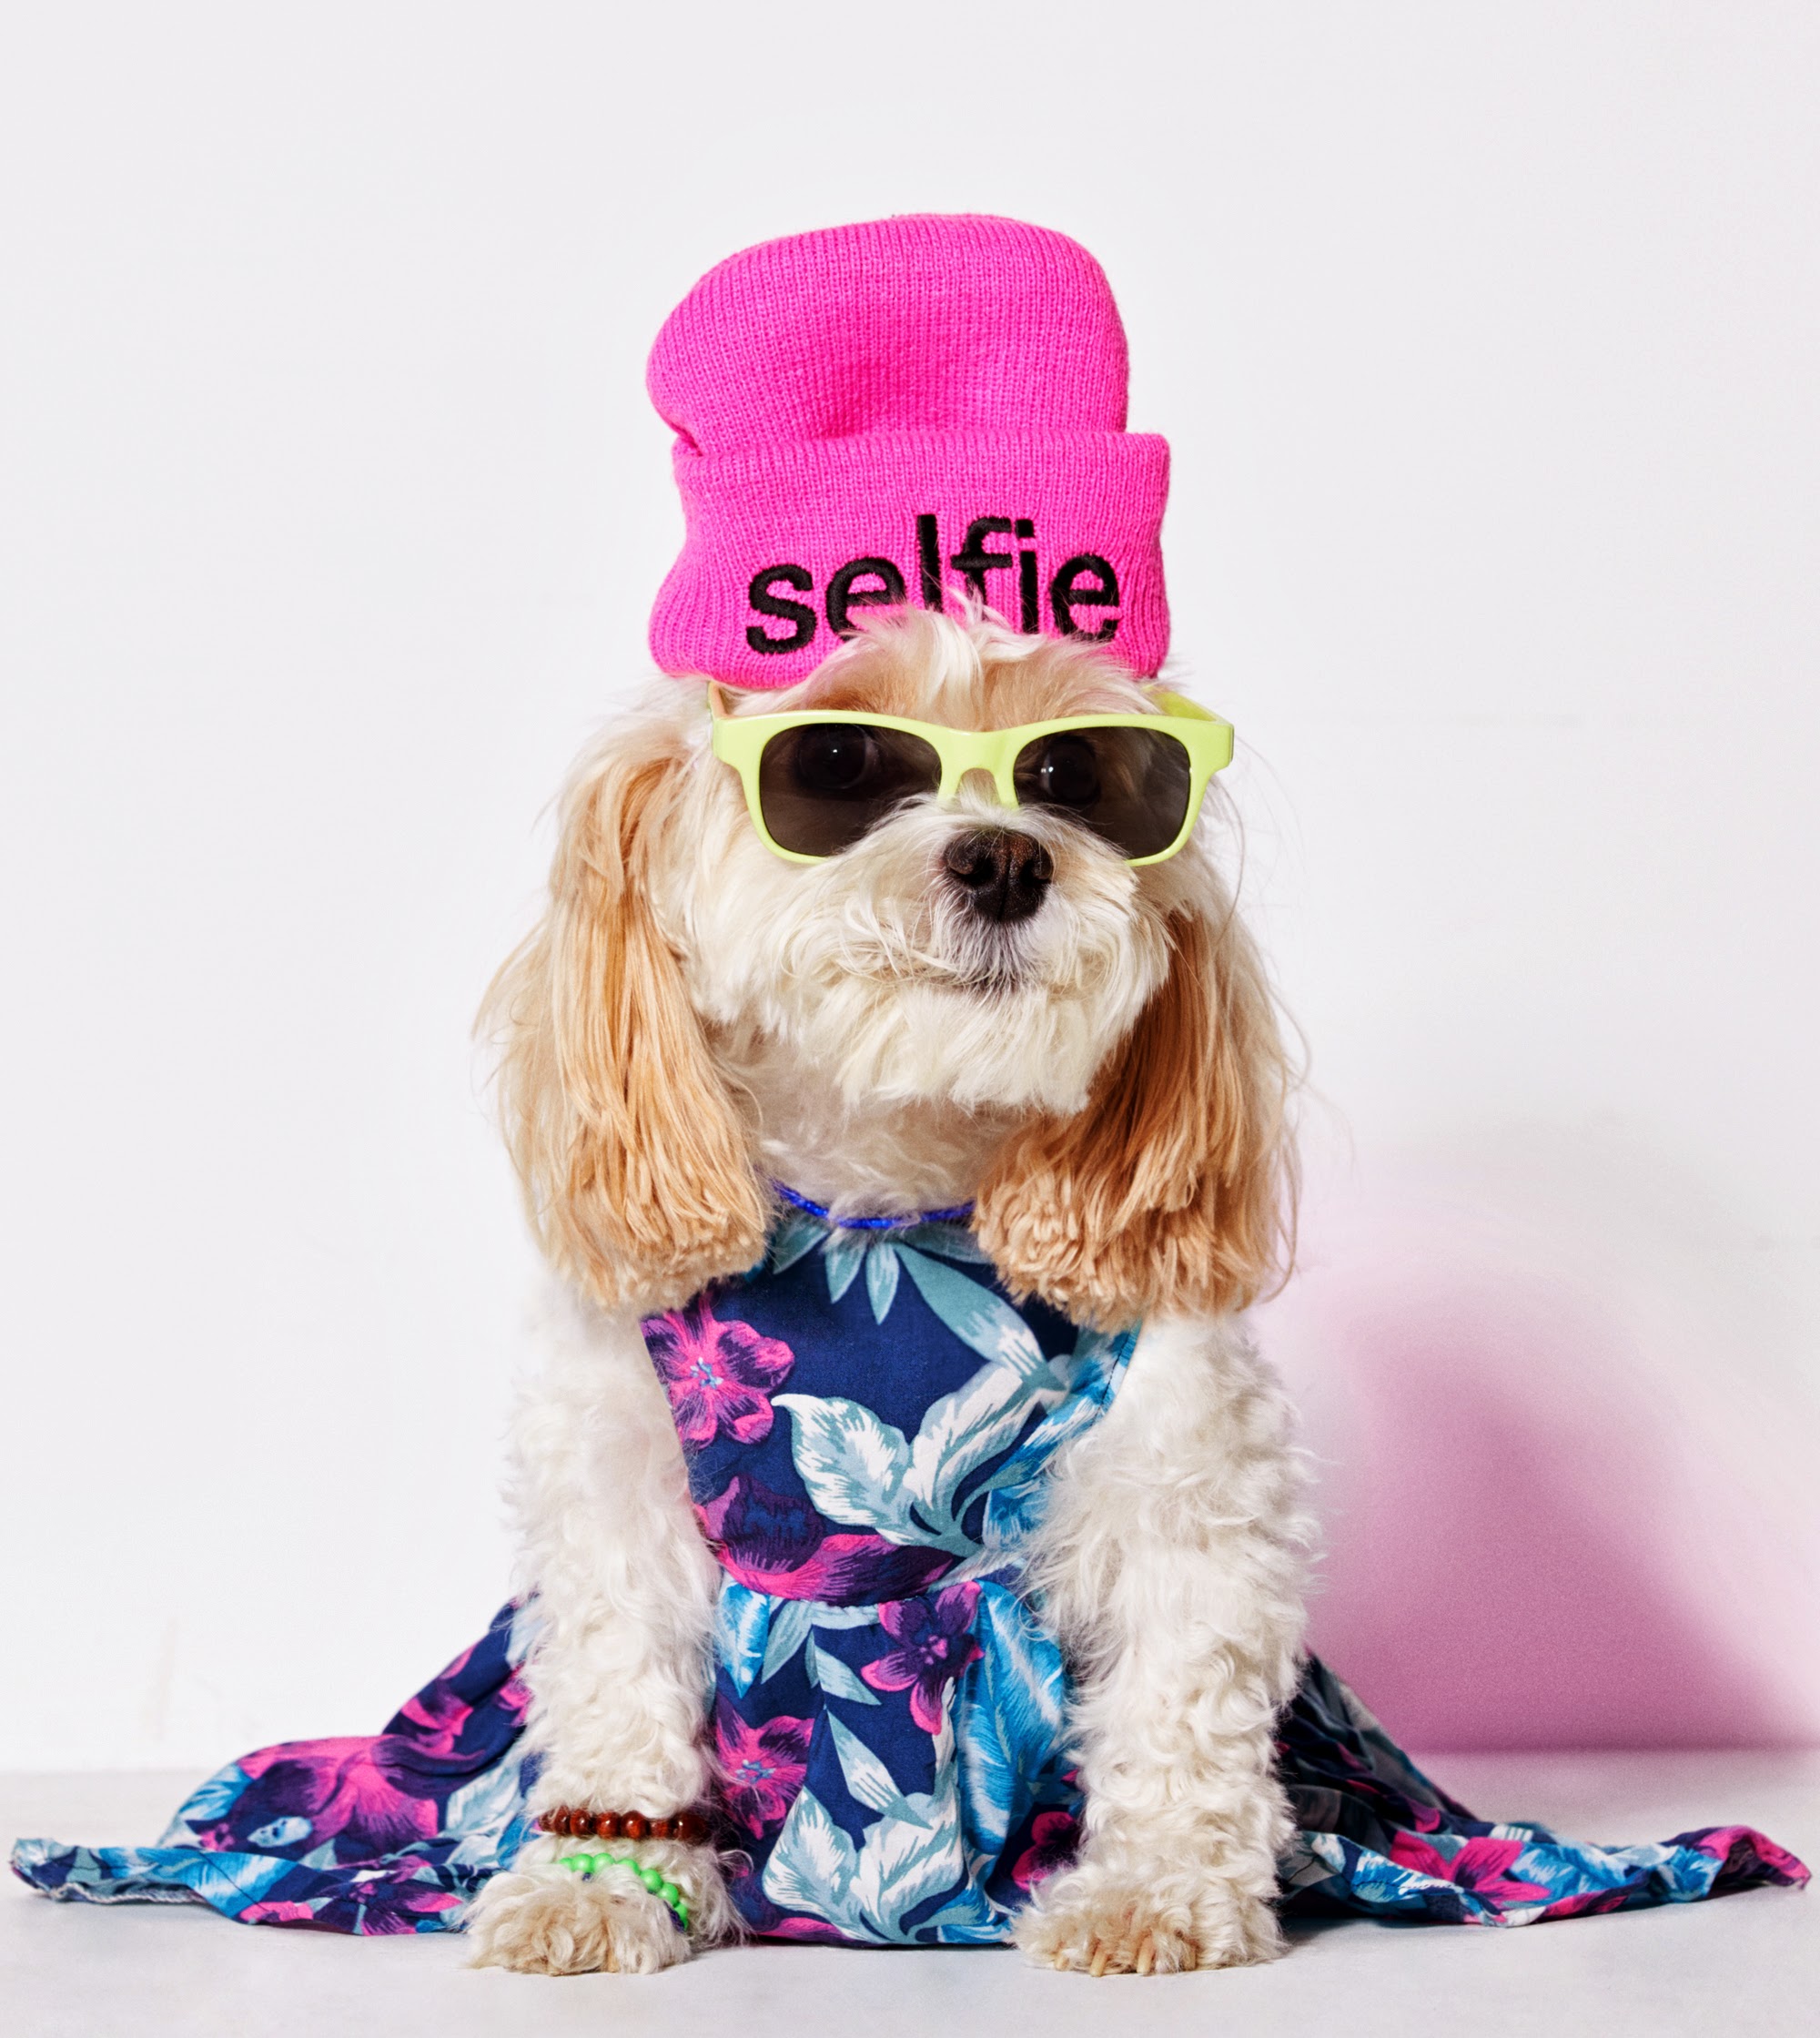 American Beagle Outfitters, la línea de ropa para perros que comenzó como una broma